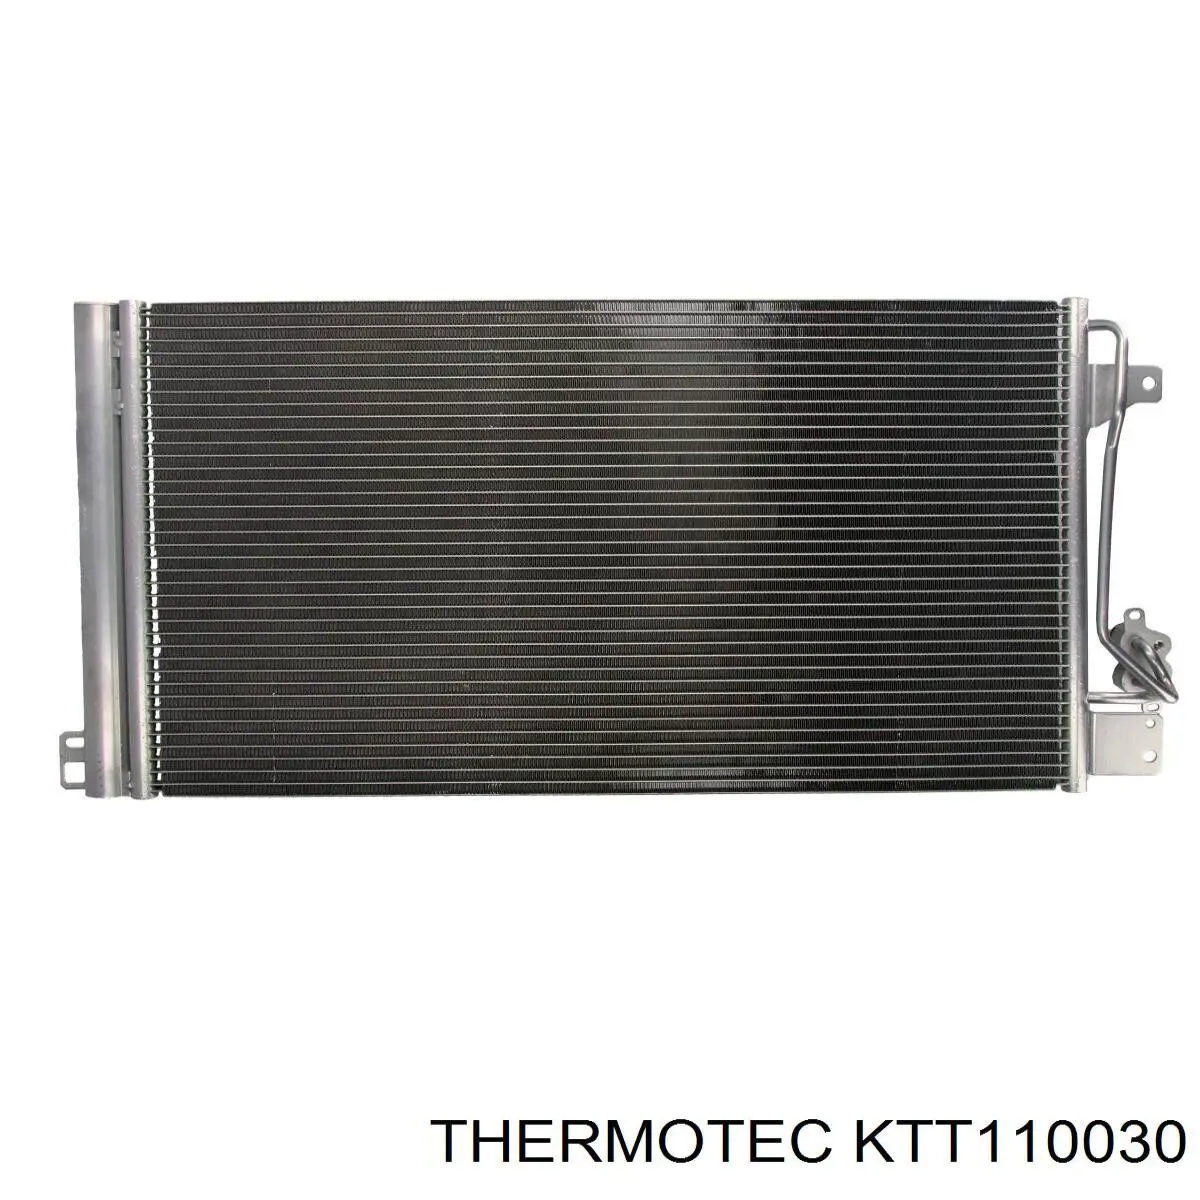 KTT110030 Thermotec condensador aire acondicionado